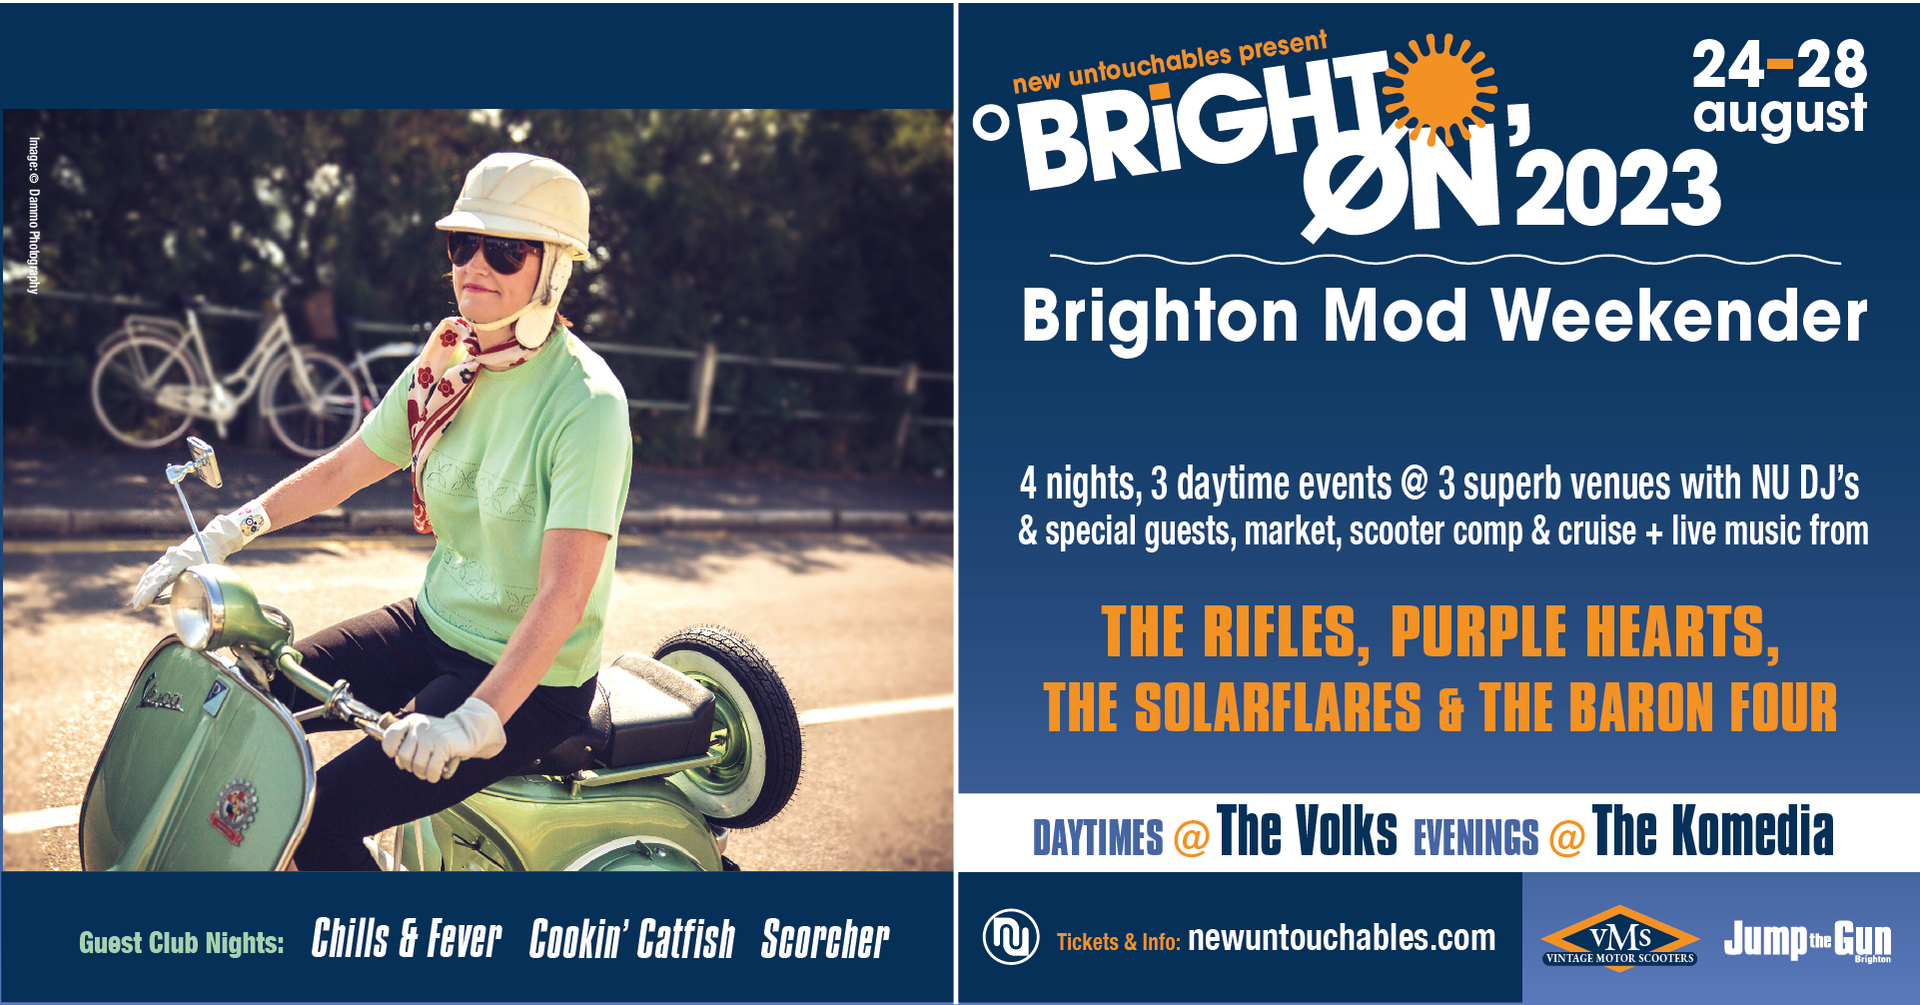 Brighton Mod Weekender 2023, Brighton, England, United Kingdom